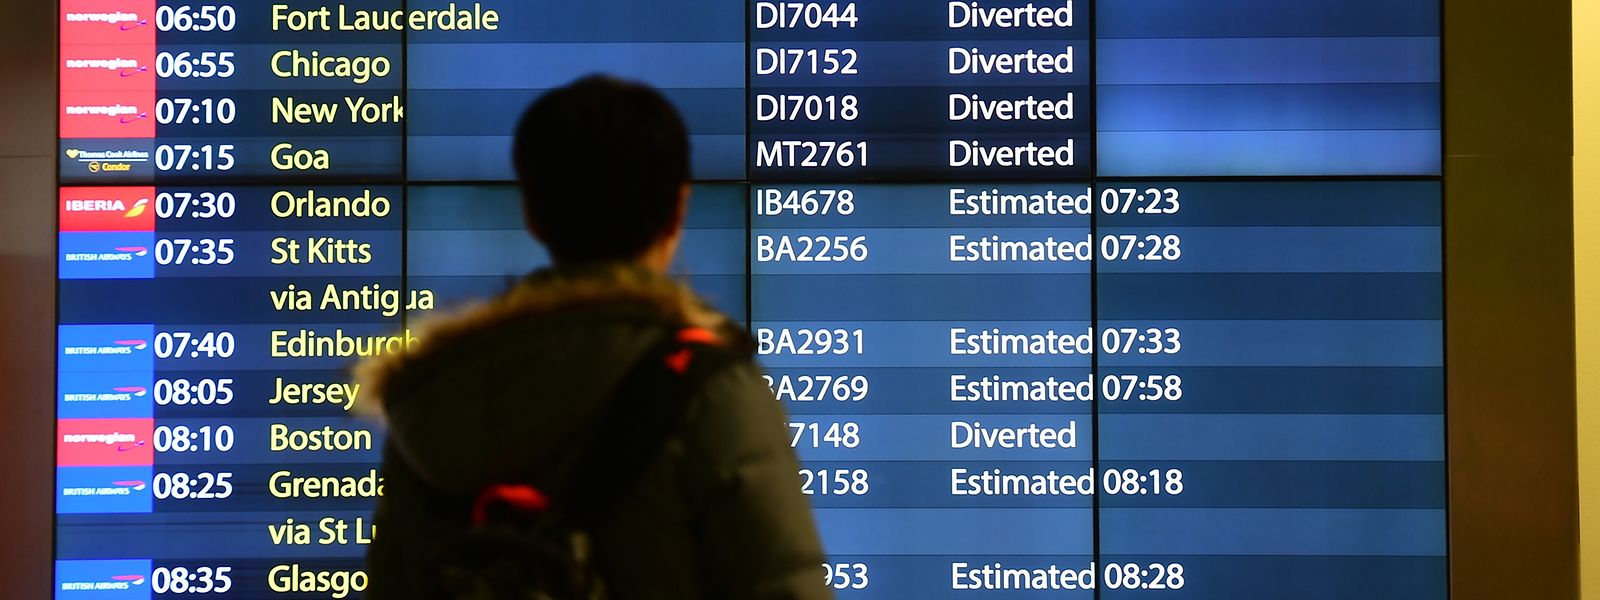 Die Ankunftstafel am Flughafen Gatwick zeigt verspätete und umgeleitete Füge an. Nach erneuten Drohnensichtungen am Flughafen sind alle Starts und Landungen an Europas siebtgrößtem Airport wieder ausgesetzt worden. 